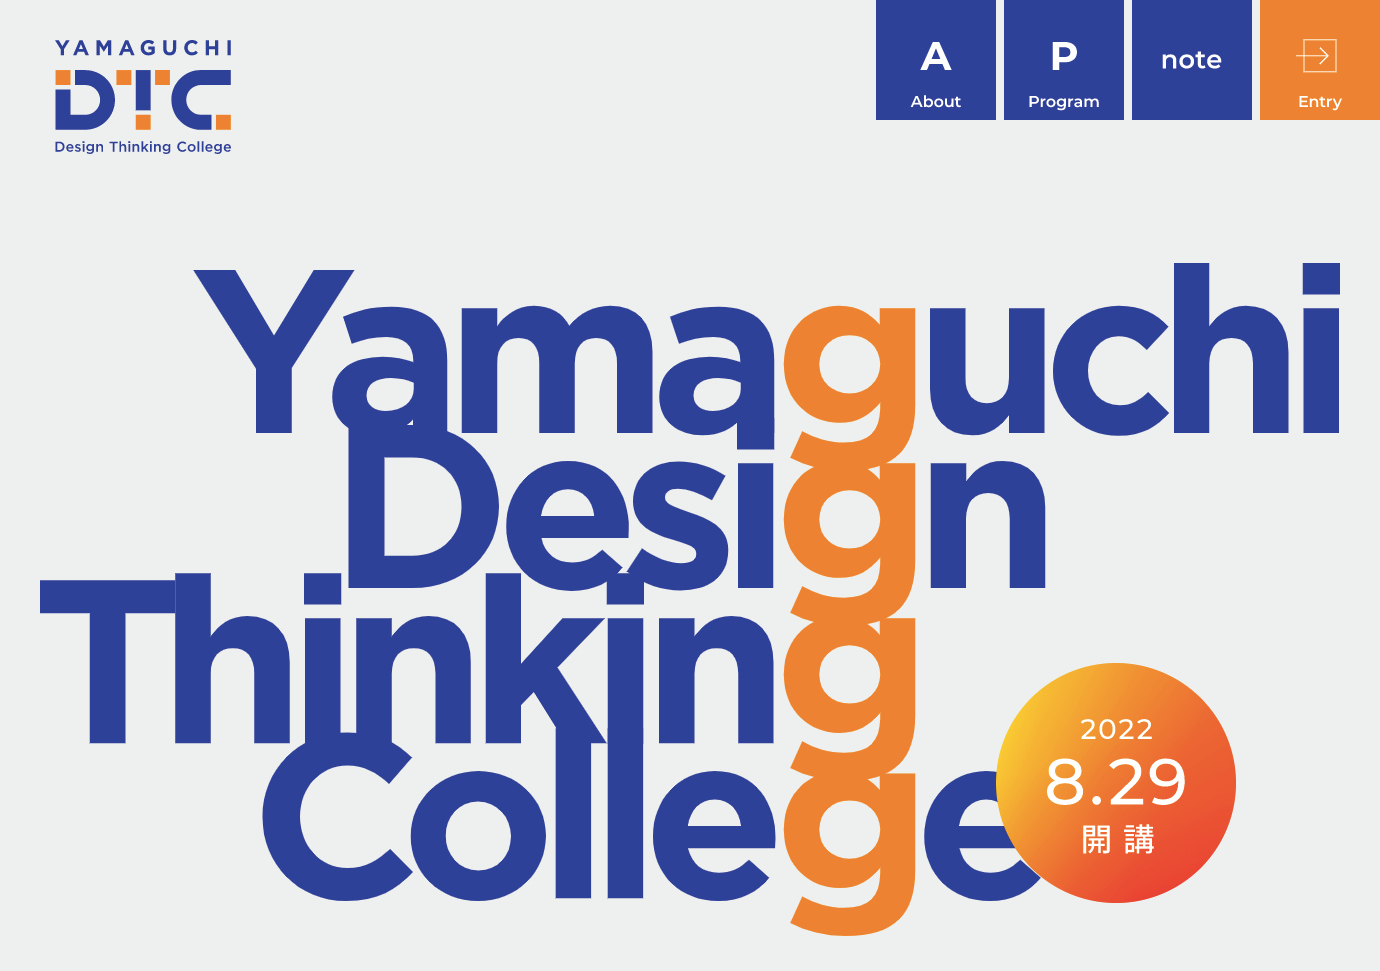 「やまぐちデザインシンキングカレッジ」のオープニングイベントに長谷川敦士が登壇